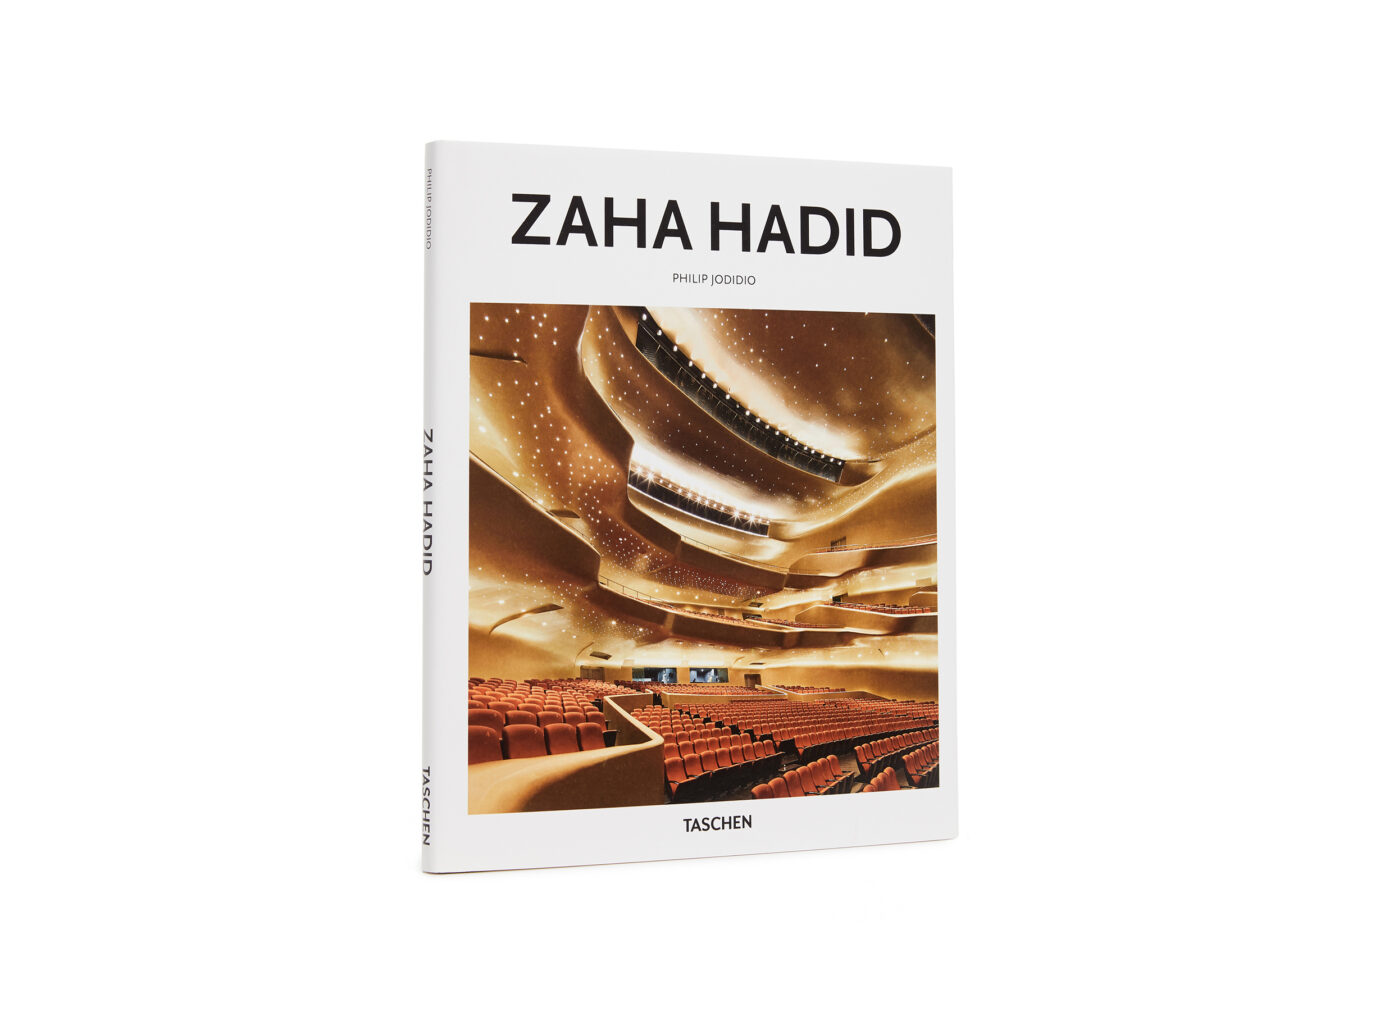 Taschen Basic Art Series: Zaha Hadid